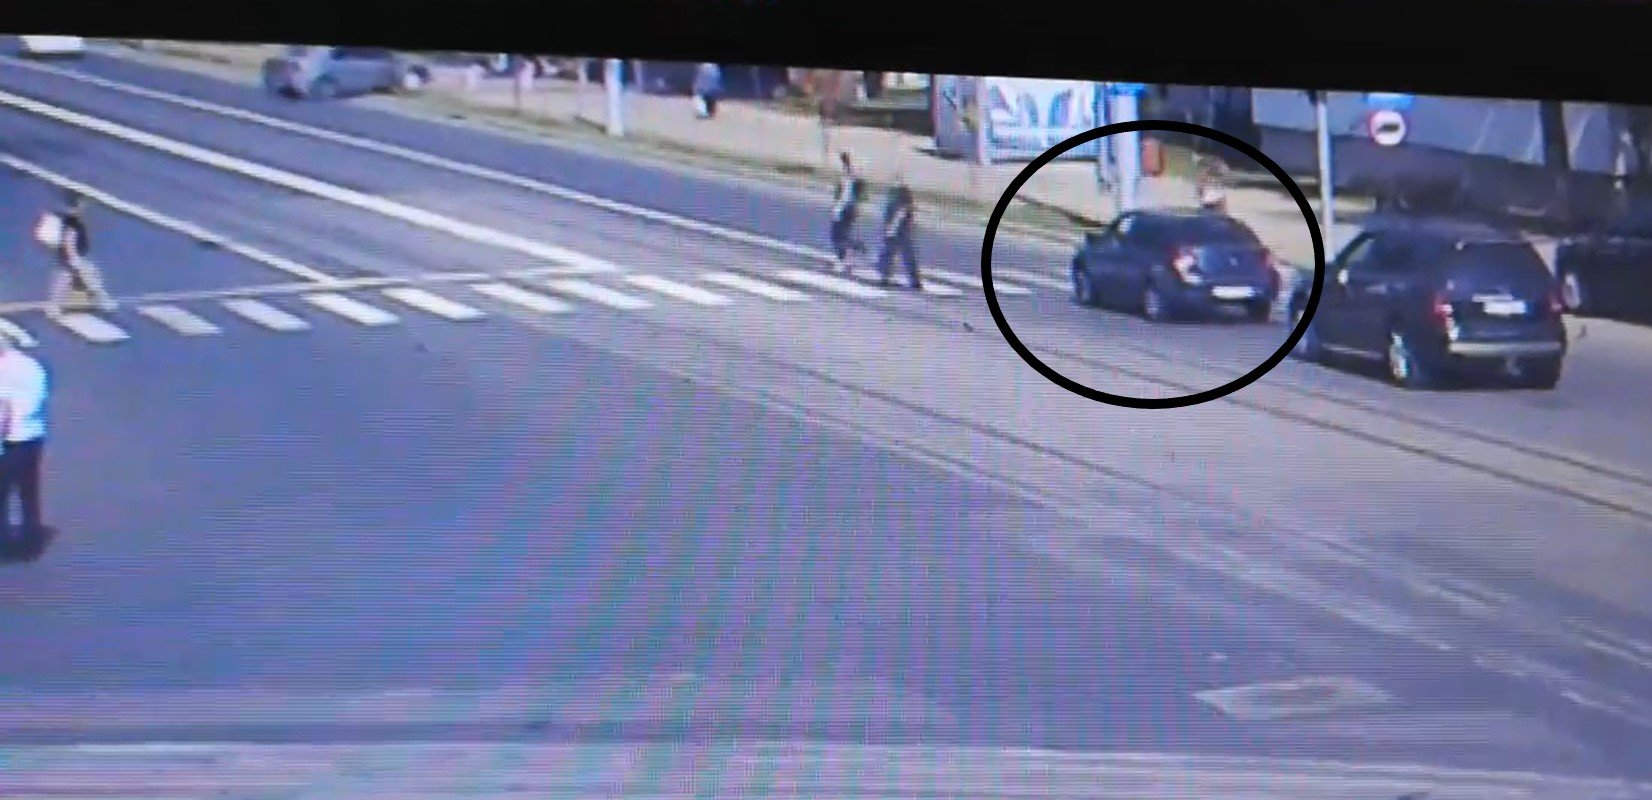  VIDEO: Momentul în care un şofer izbeşte un pieton pe o trecere din Iaşi şi-l aruncă pe stradă